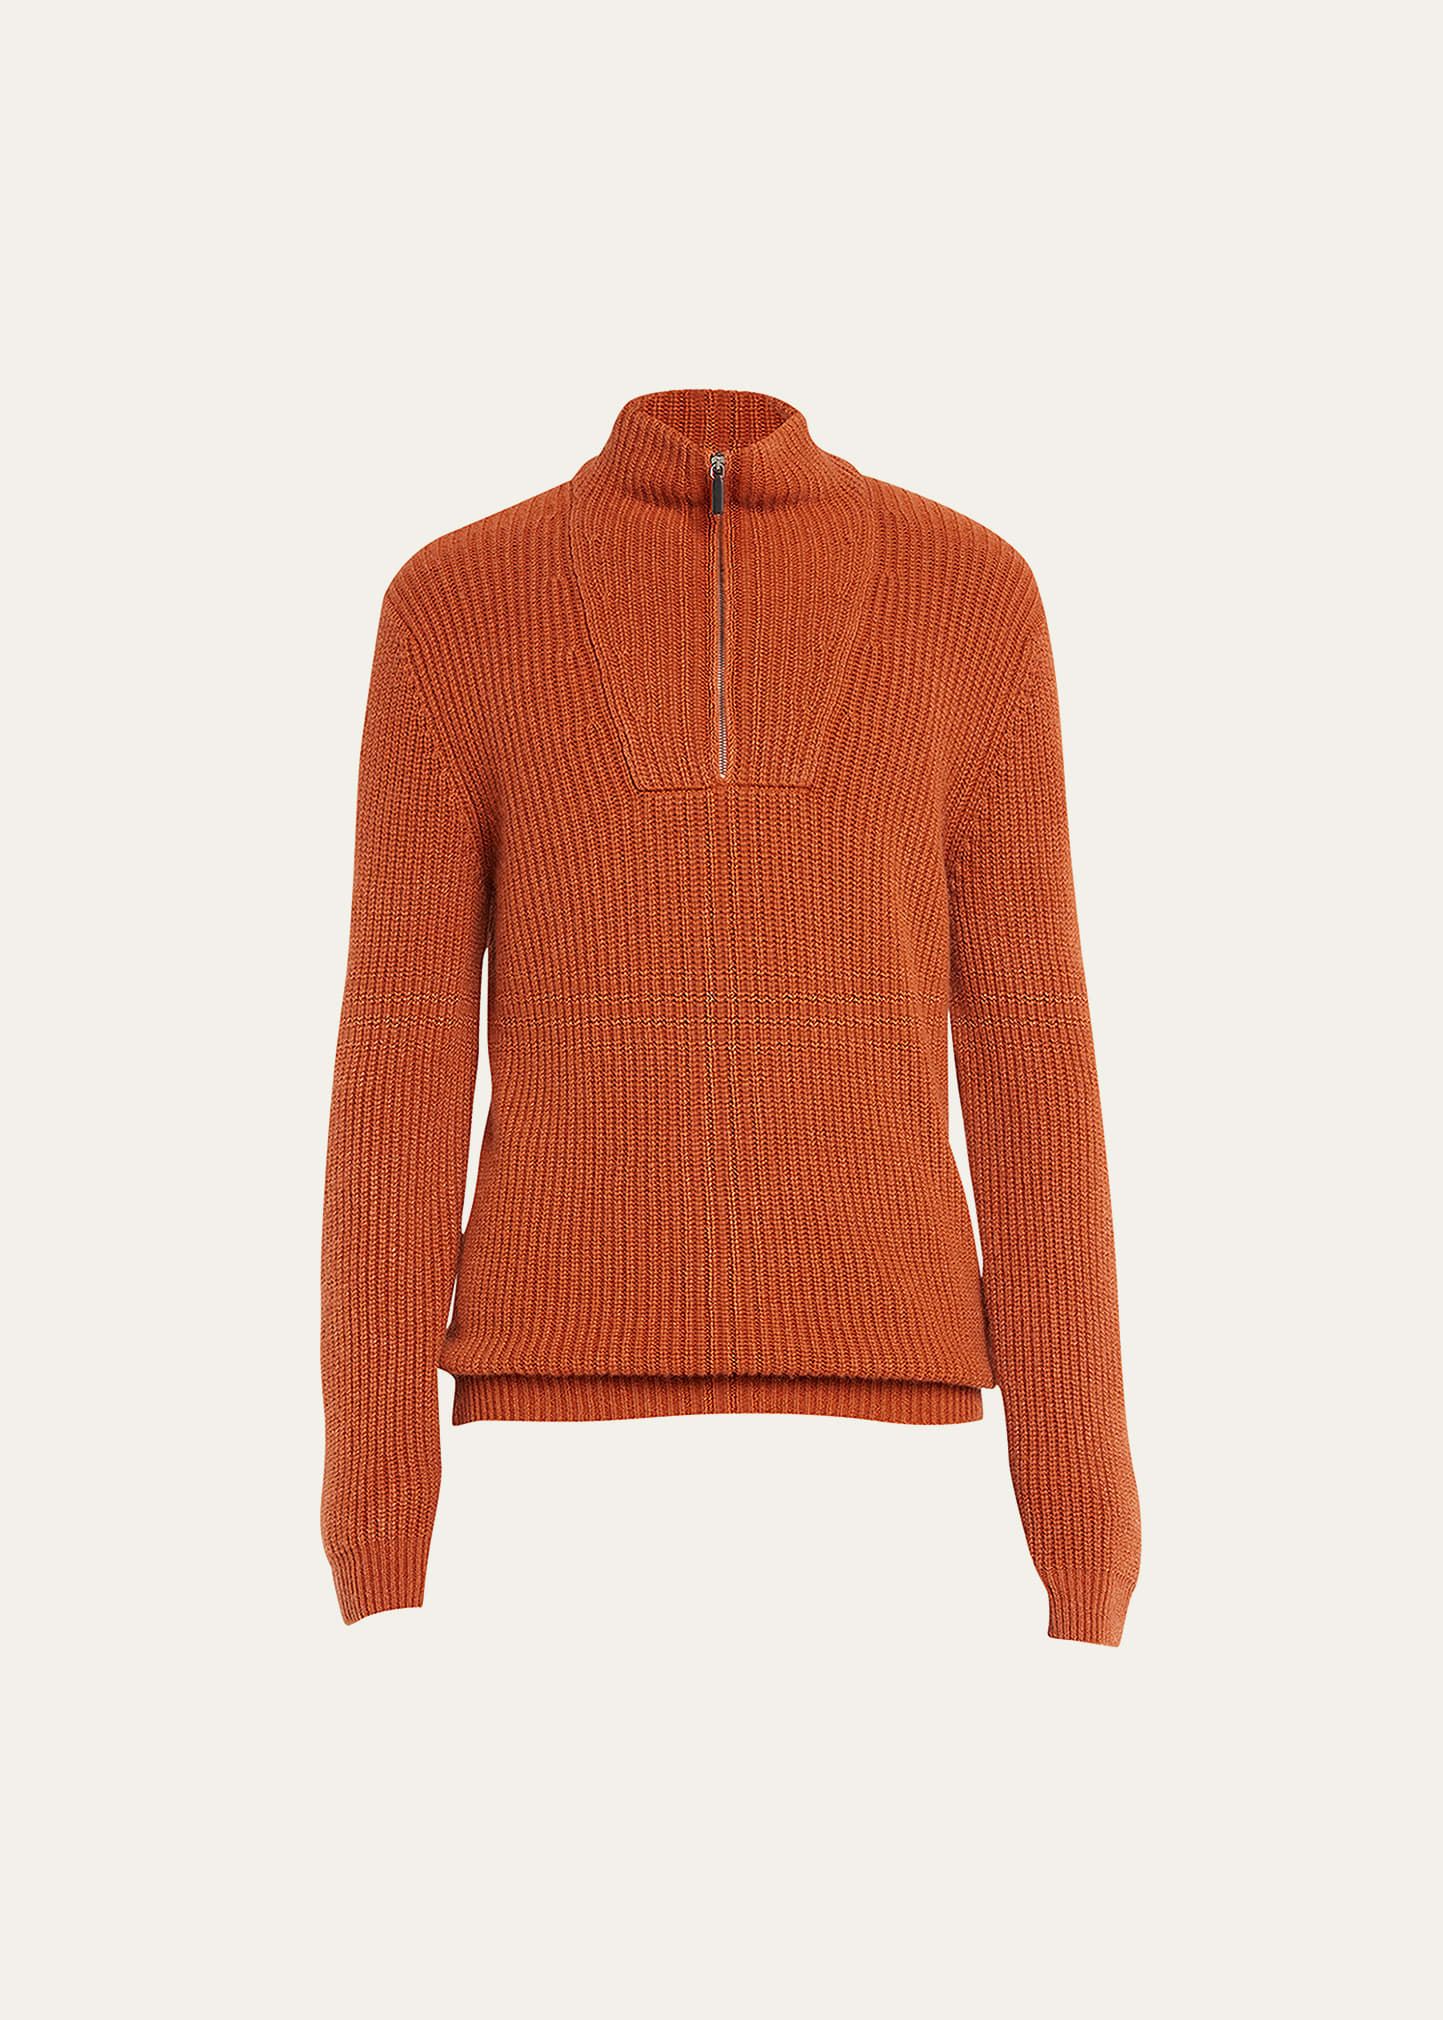 Iris Von Arnim Men's Half-Zip Ribbed Cashmere Sweater